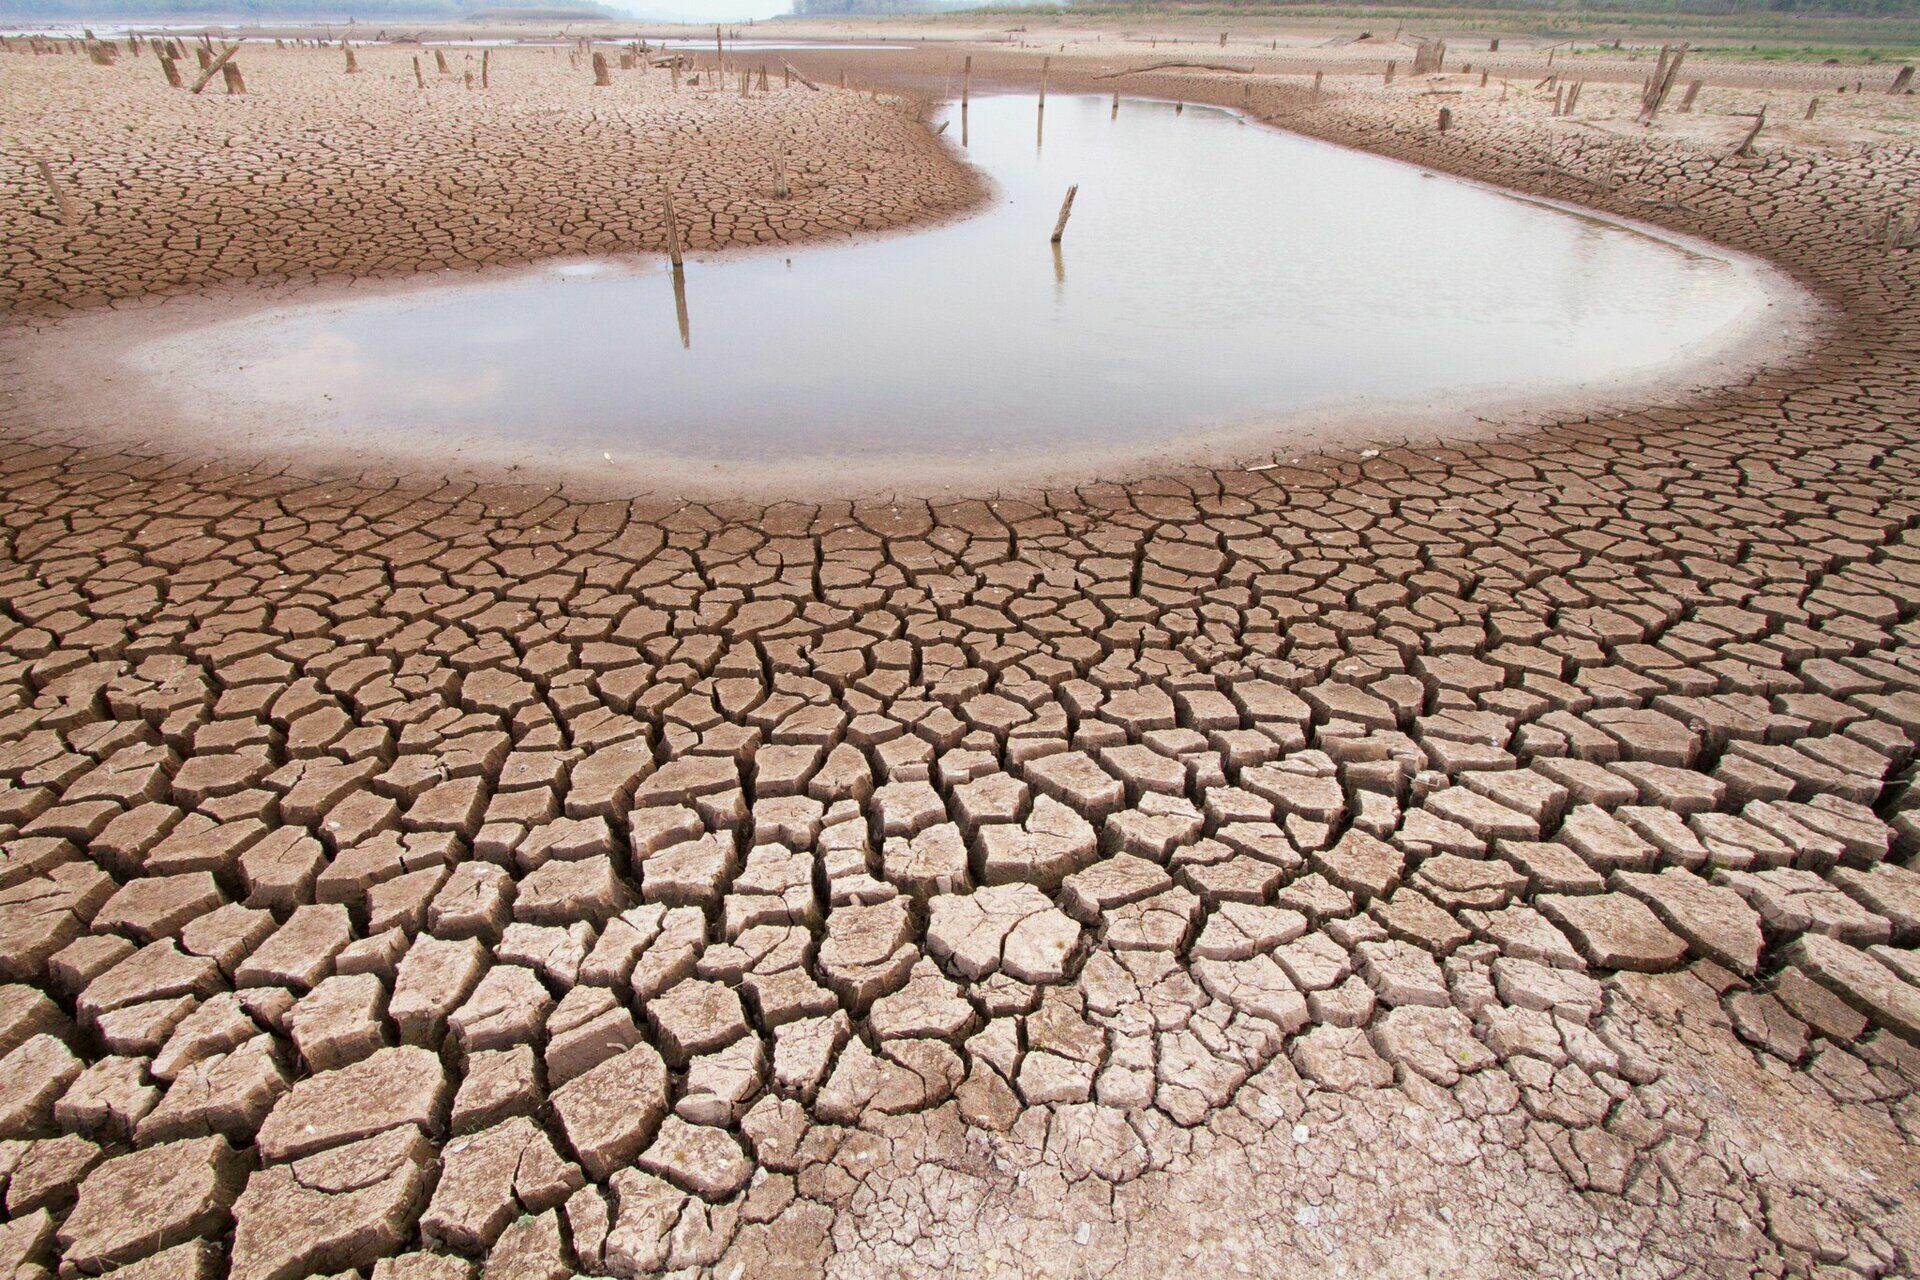 ООН: сокращение водных запасов на Земле стало серьезной угрозой человечеству